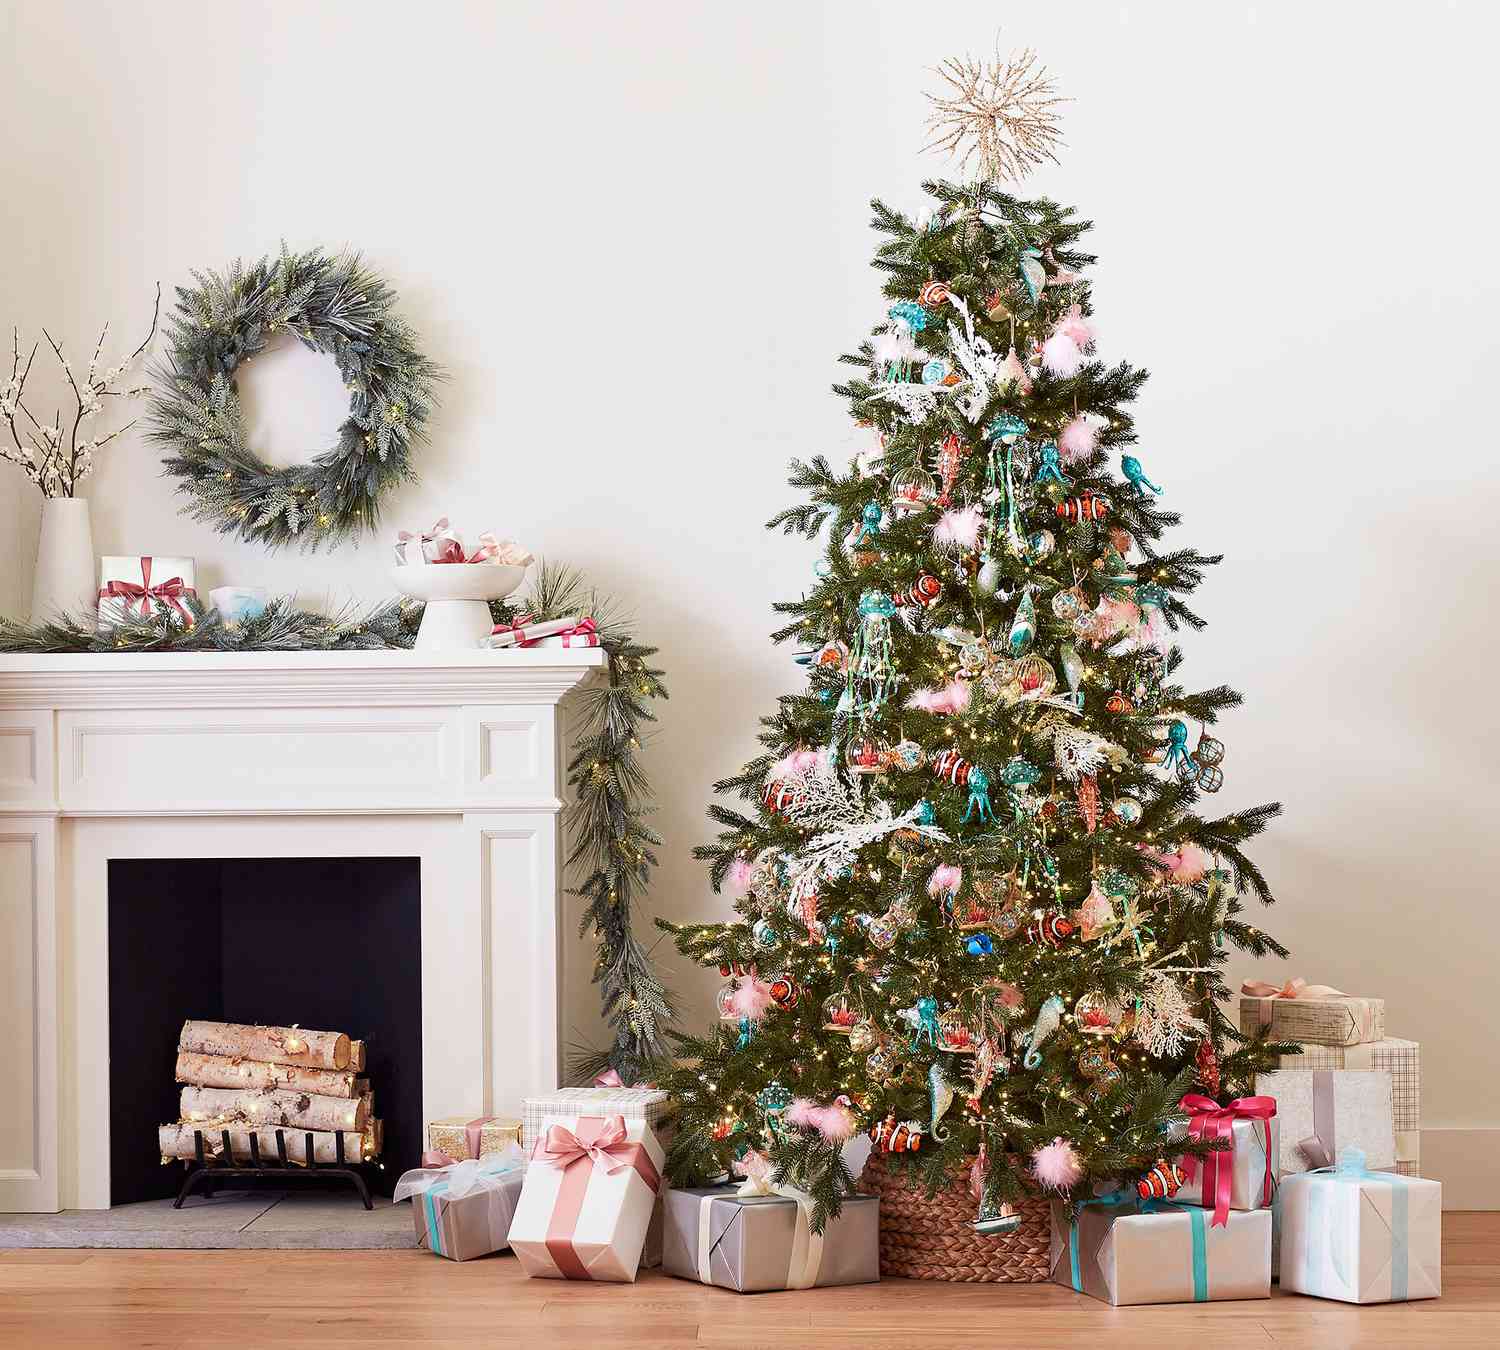 Weihnachtseinrichtung mit Baum, Kaminsims, Kranz und Geschenken von Pottery Barn